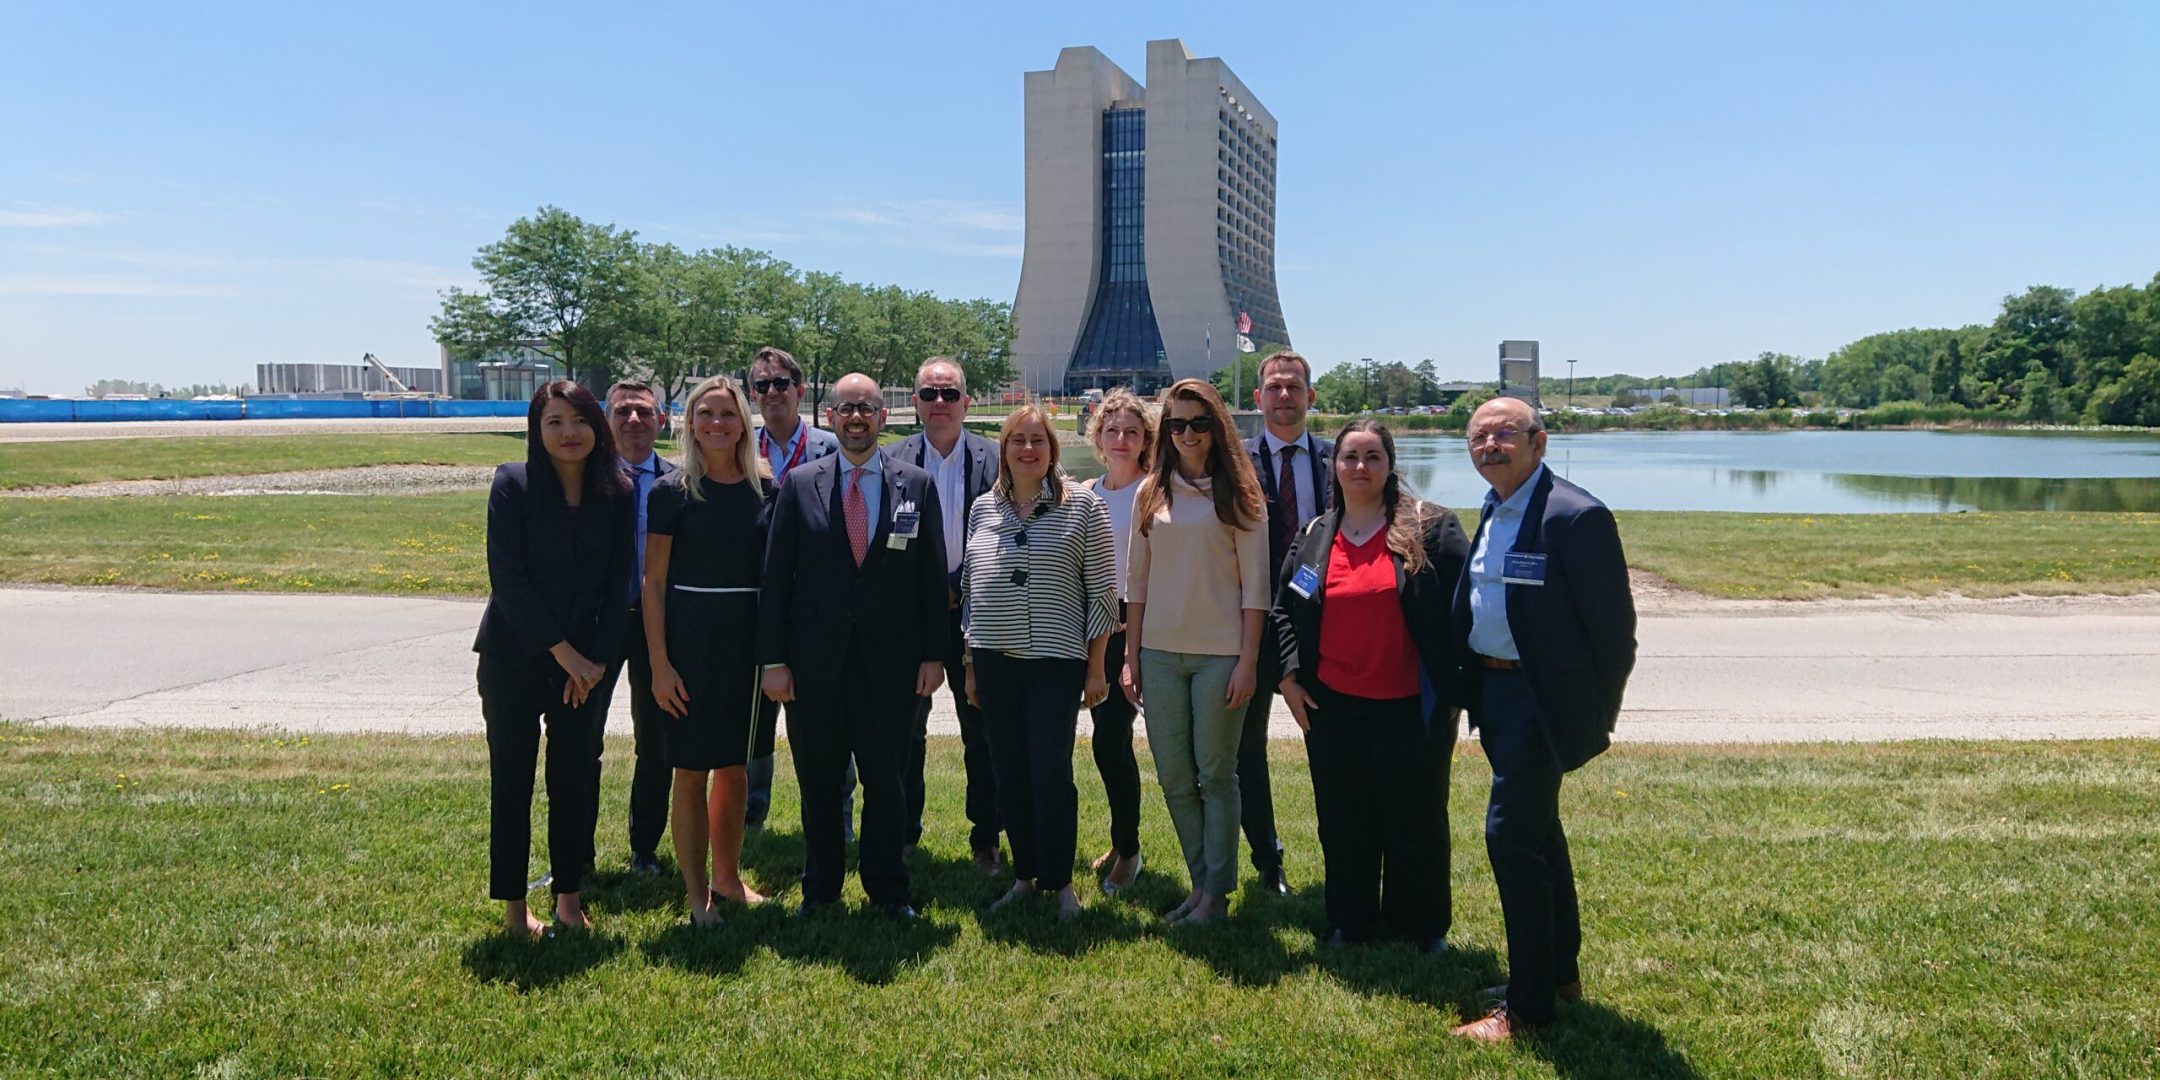 La délégation de conseillers scientifiques en visite au Fermilab